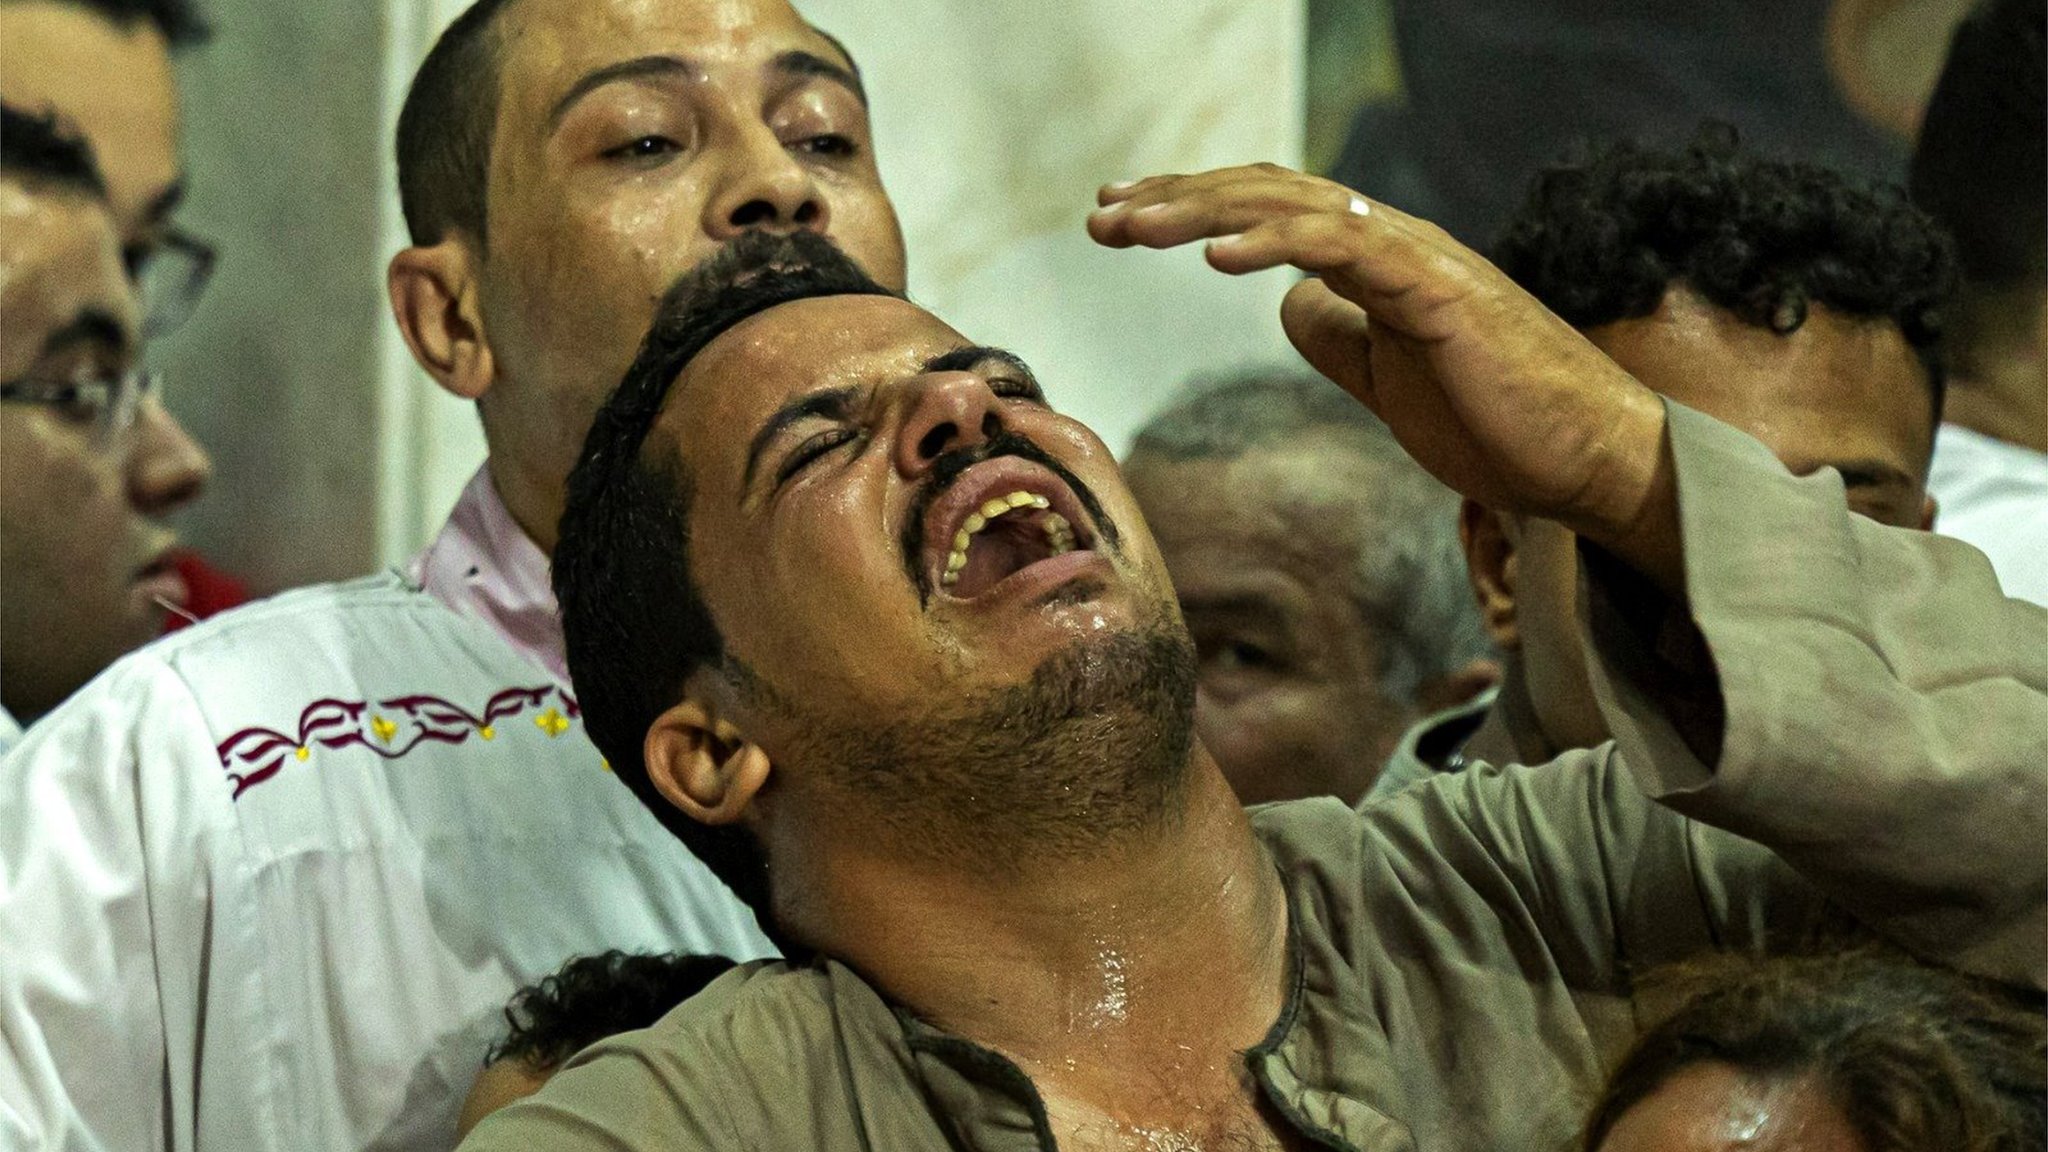 حريق كنيسة ابو سيفين: غضب مصري من "إهمال" وجدل حول "قانون بناء الكنائس" وتغريدة لساوريس